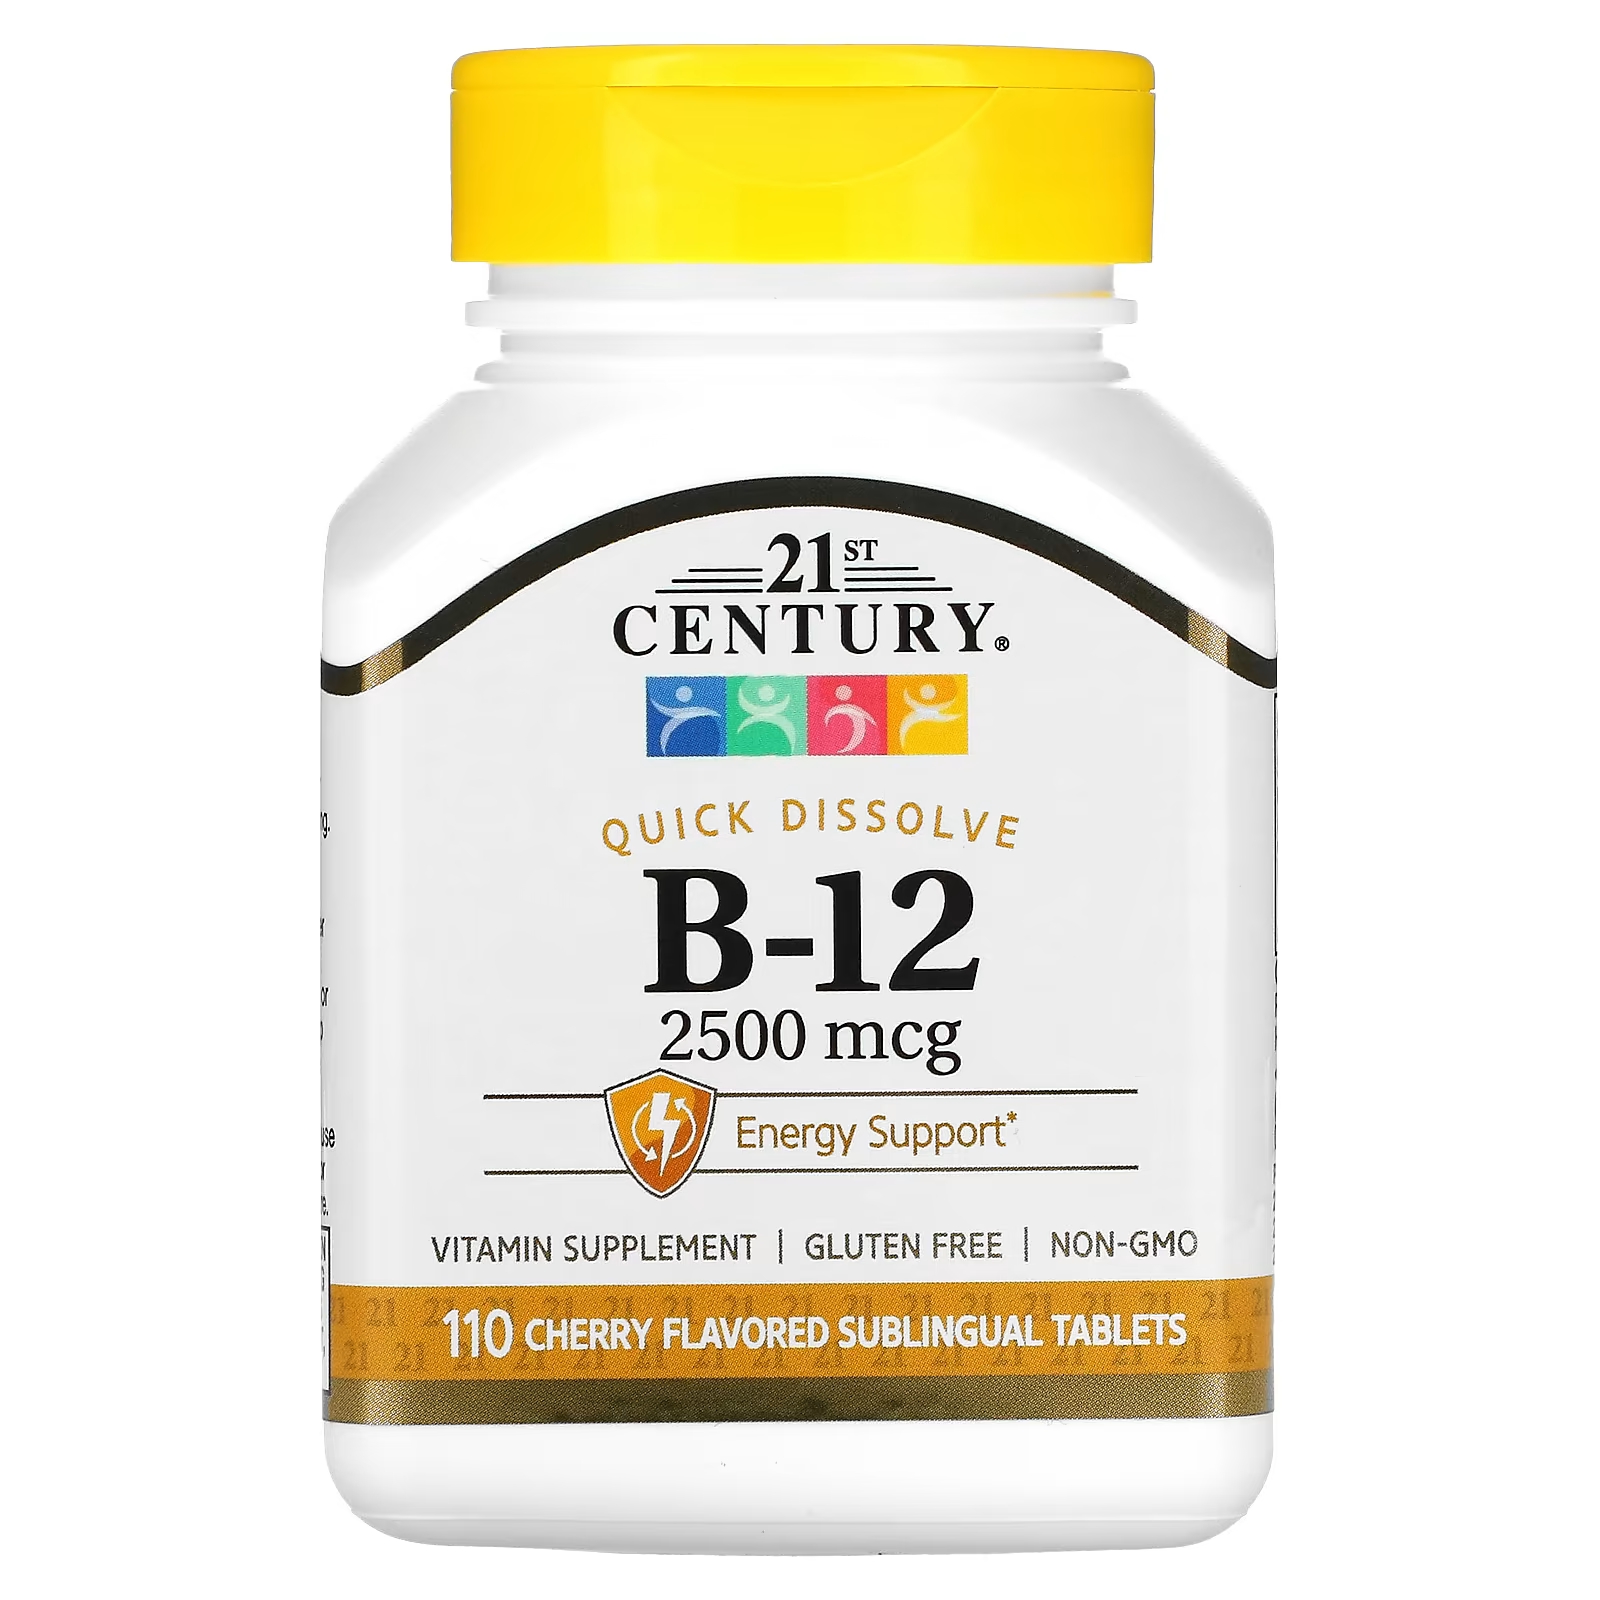 Витаминная добавка 21st Century B-12 Cherry 2500 мкг, 110 сублингвальных таблеток цена и фото